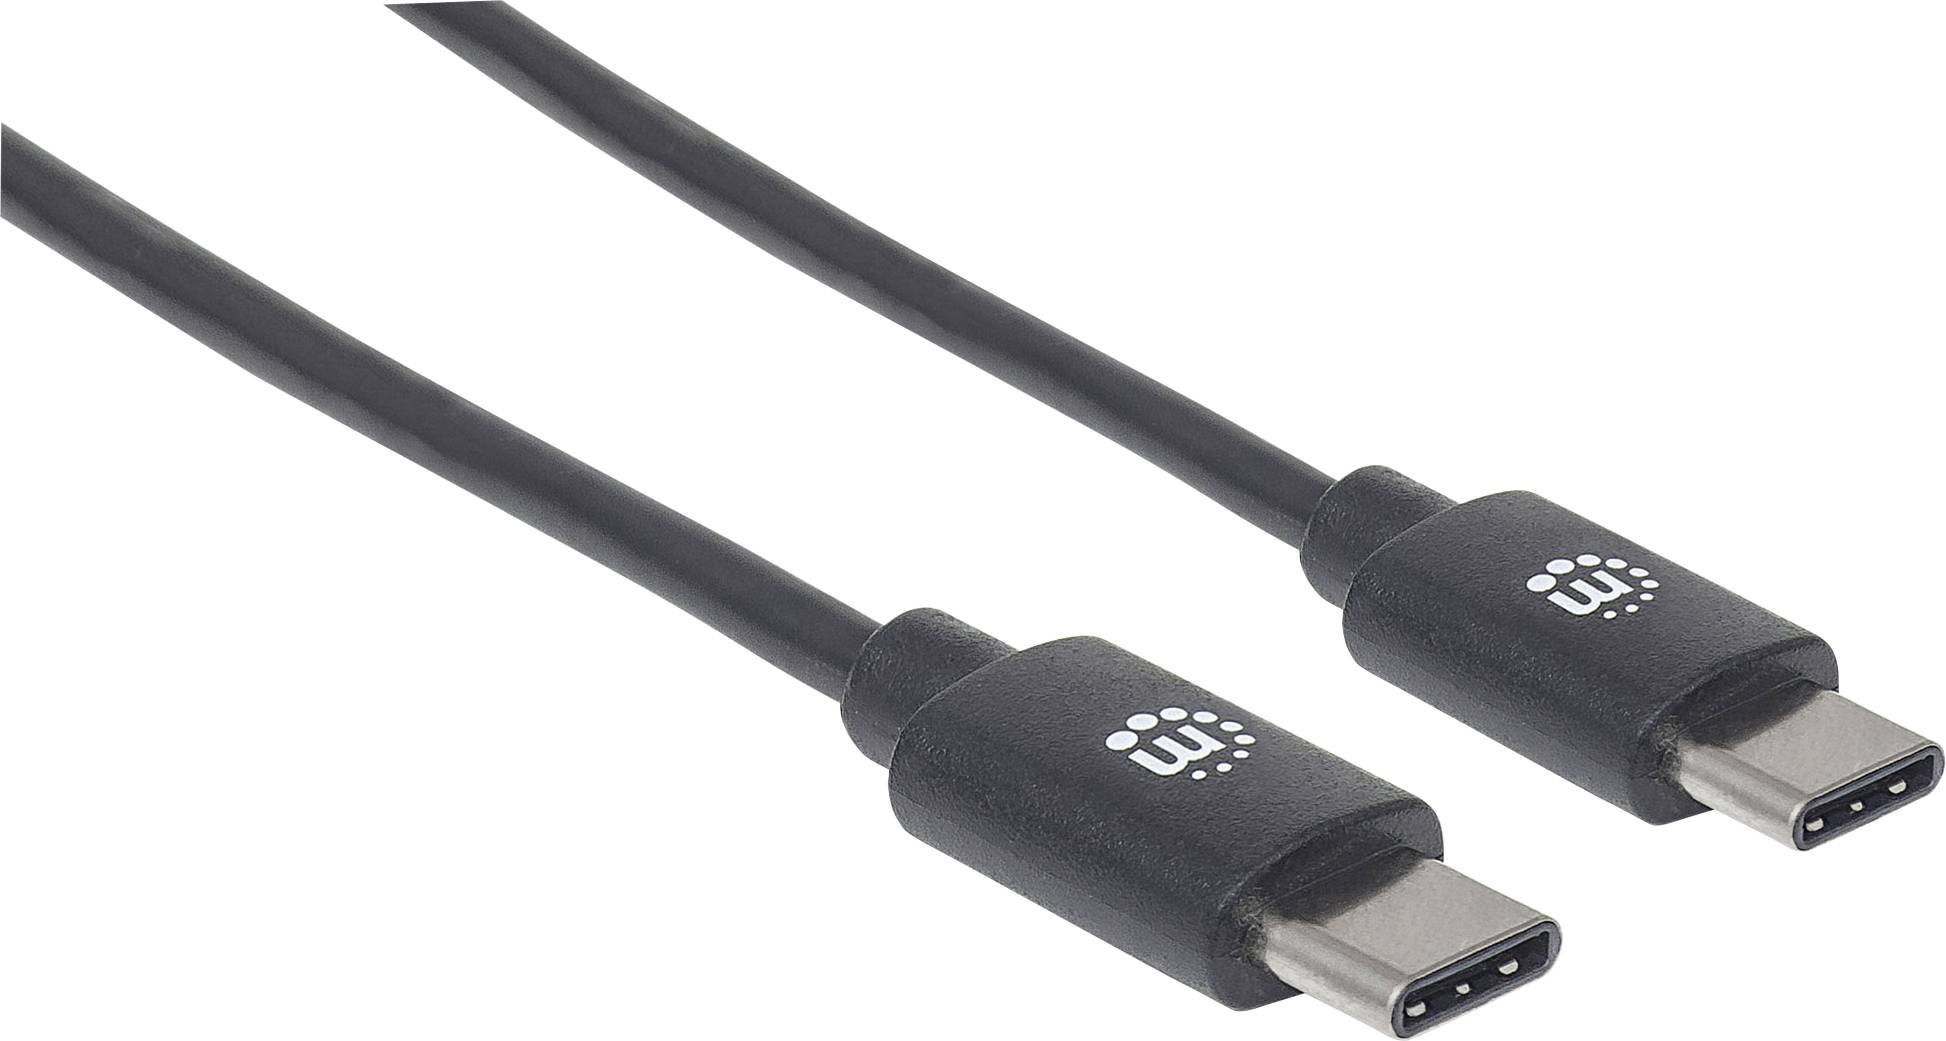 MANHATTAN USB 2.0 Typ C-Kabel C-Stecker/C-Stecker 2m schwarz